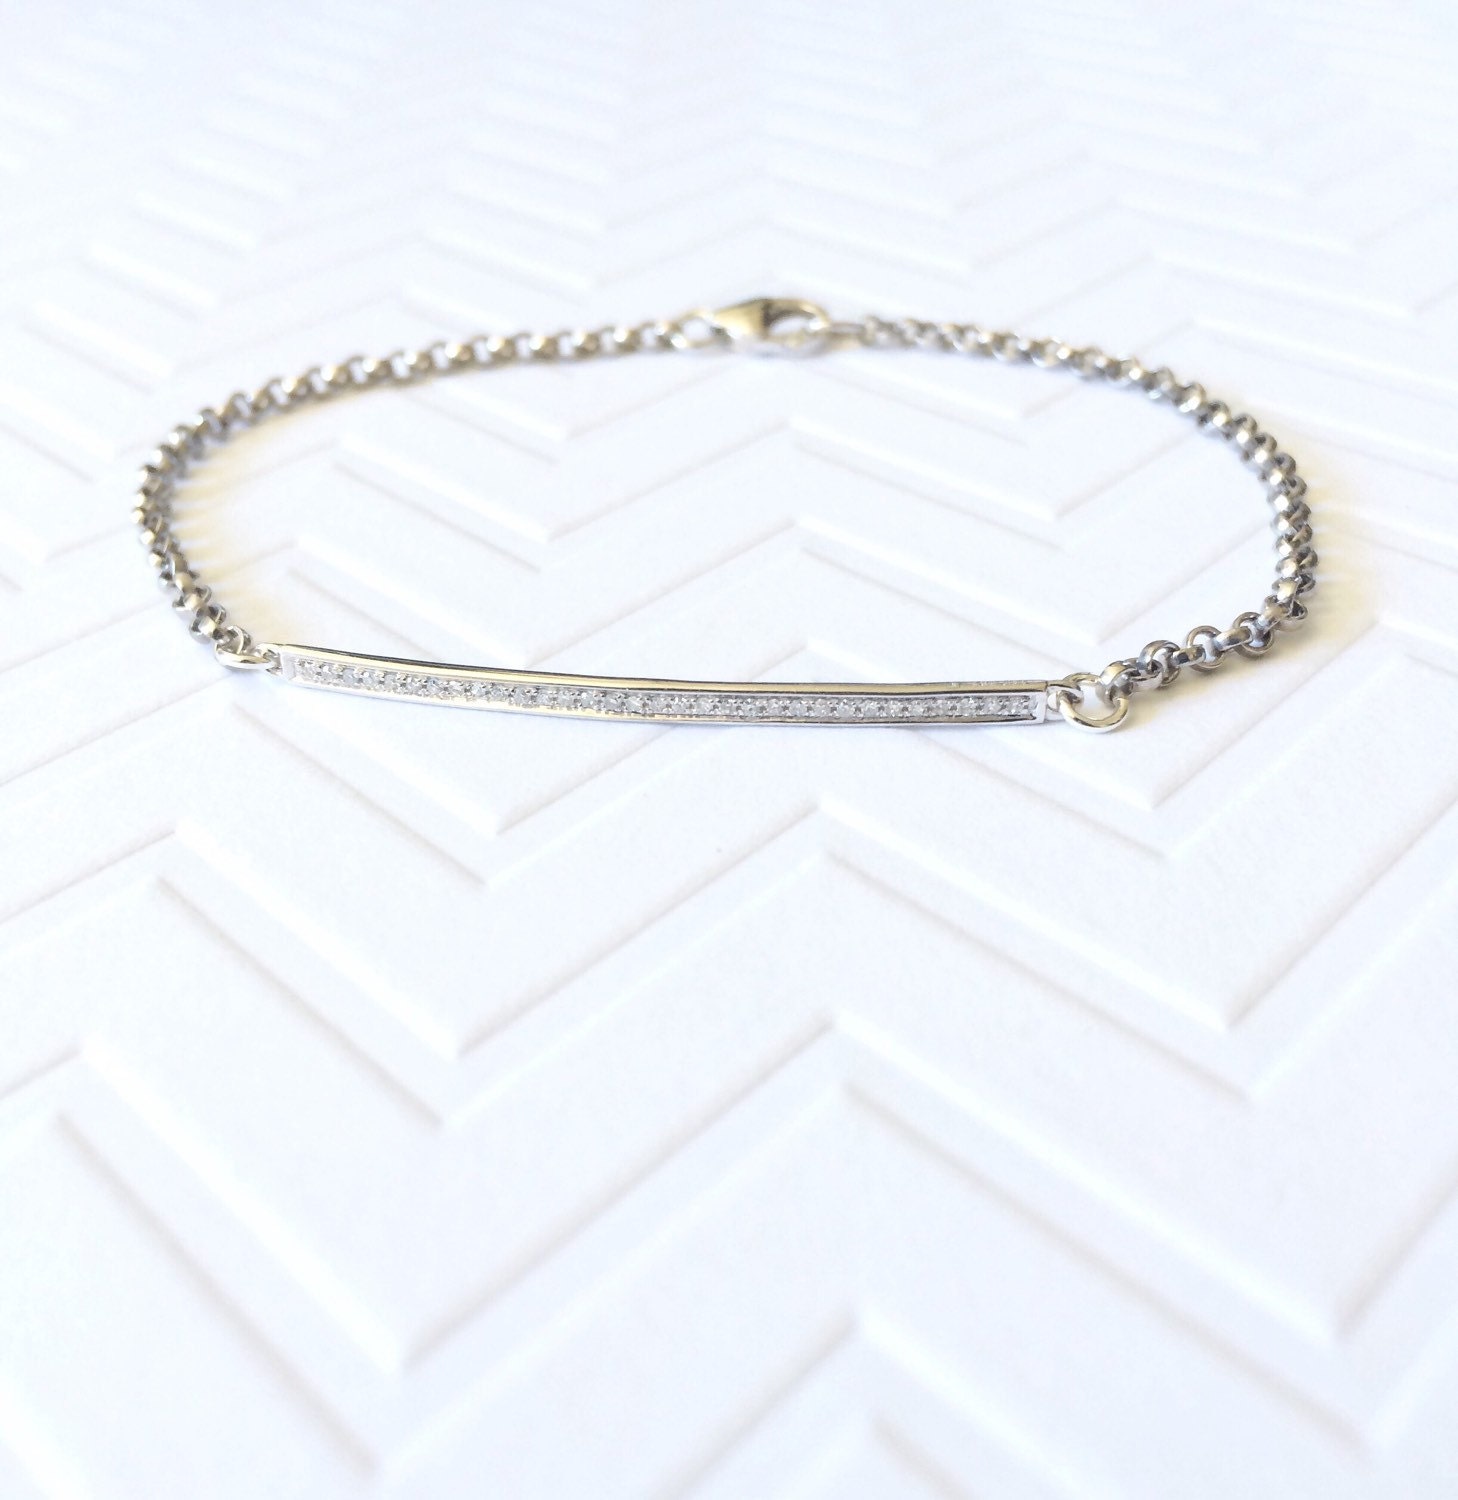 14k gold Pave diamond bar bracelet / skinny bar bracelet